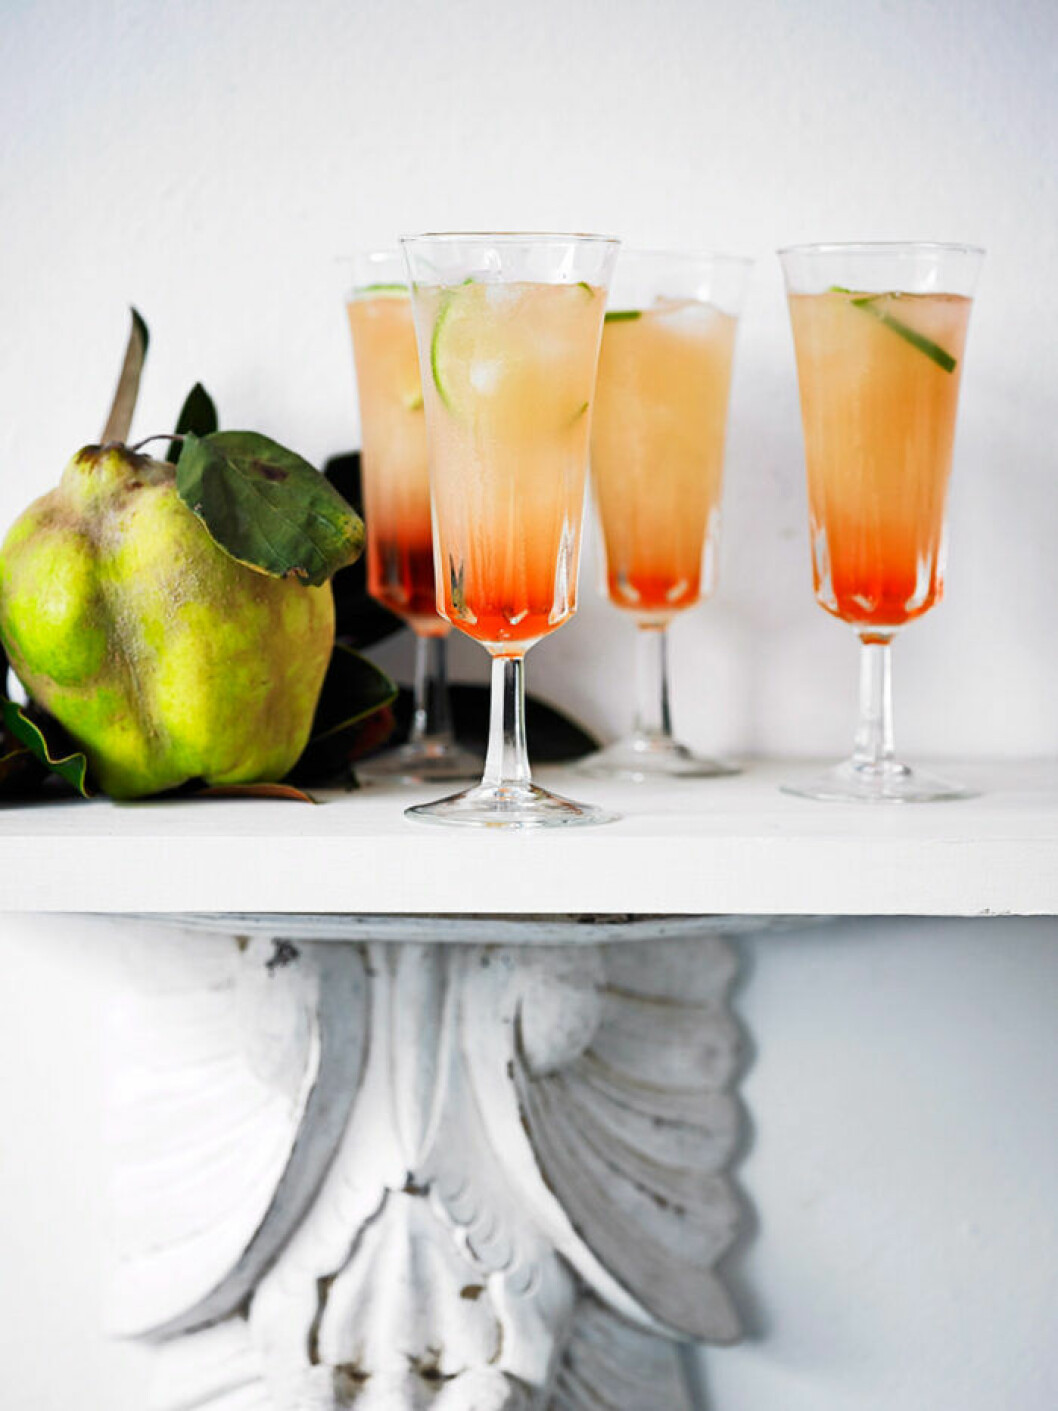 Fördrink med Aperol och grapefrukt.